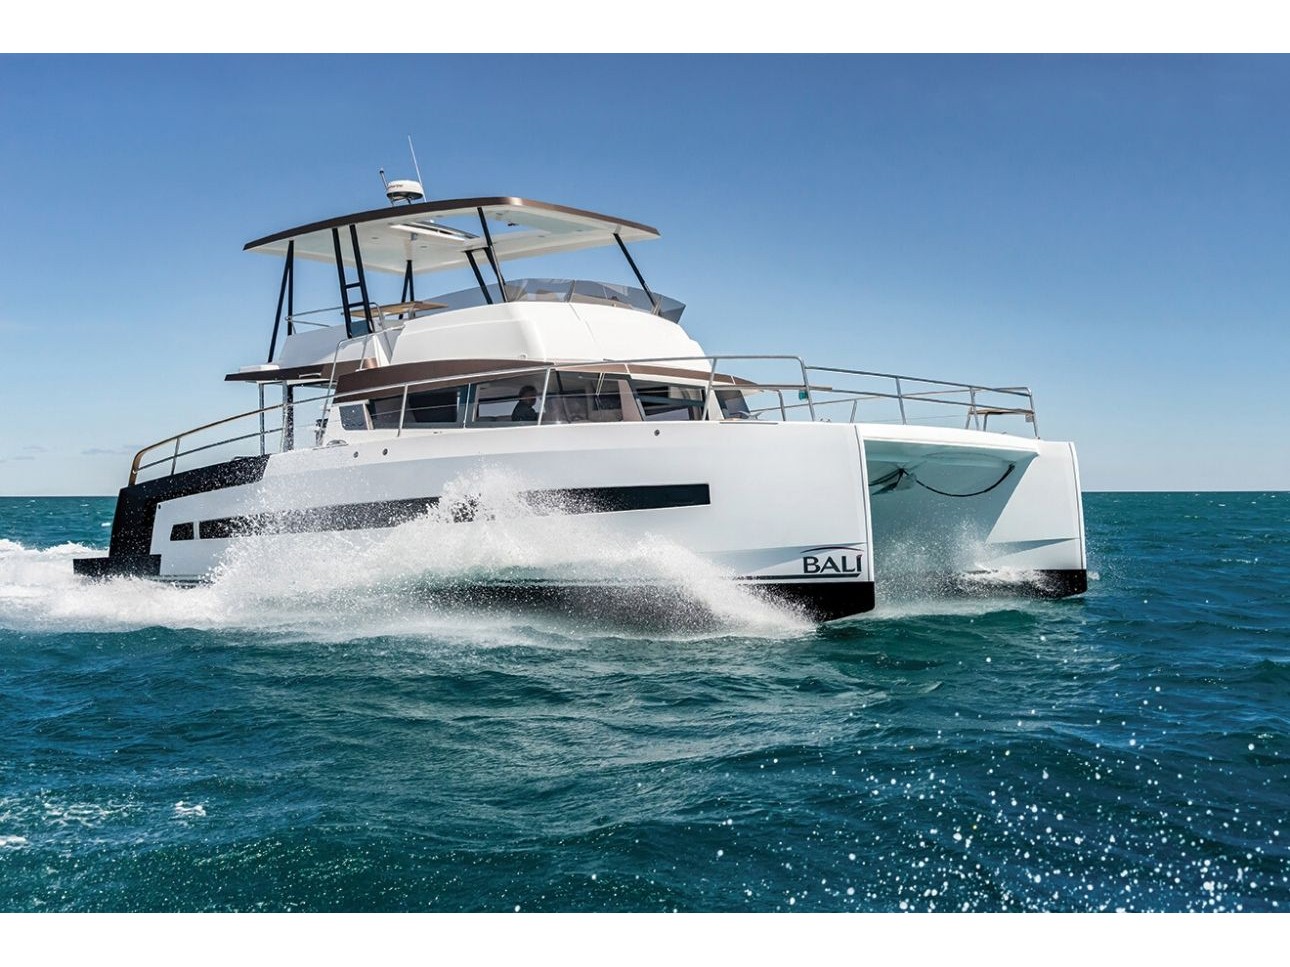 Bali 4.3 MY - Luxury yacht charter Italy & Boat hire in Italy Sardinia Costa Smeralda Olbia Marina di Olbia 1